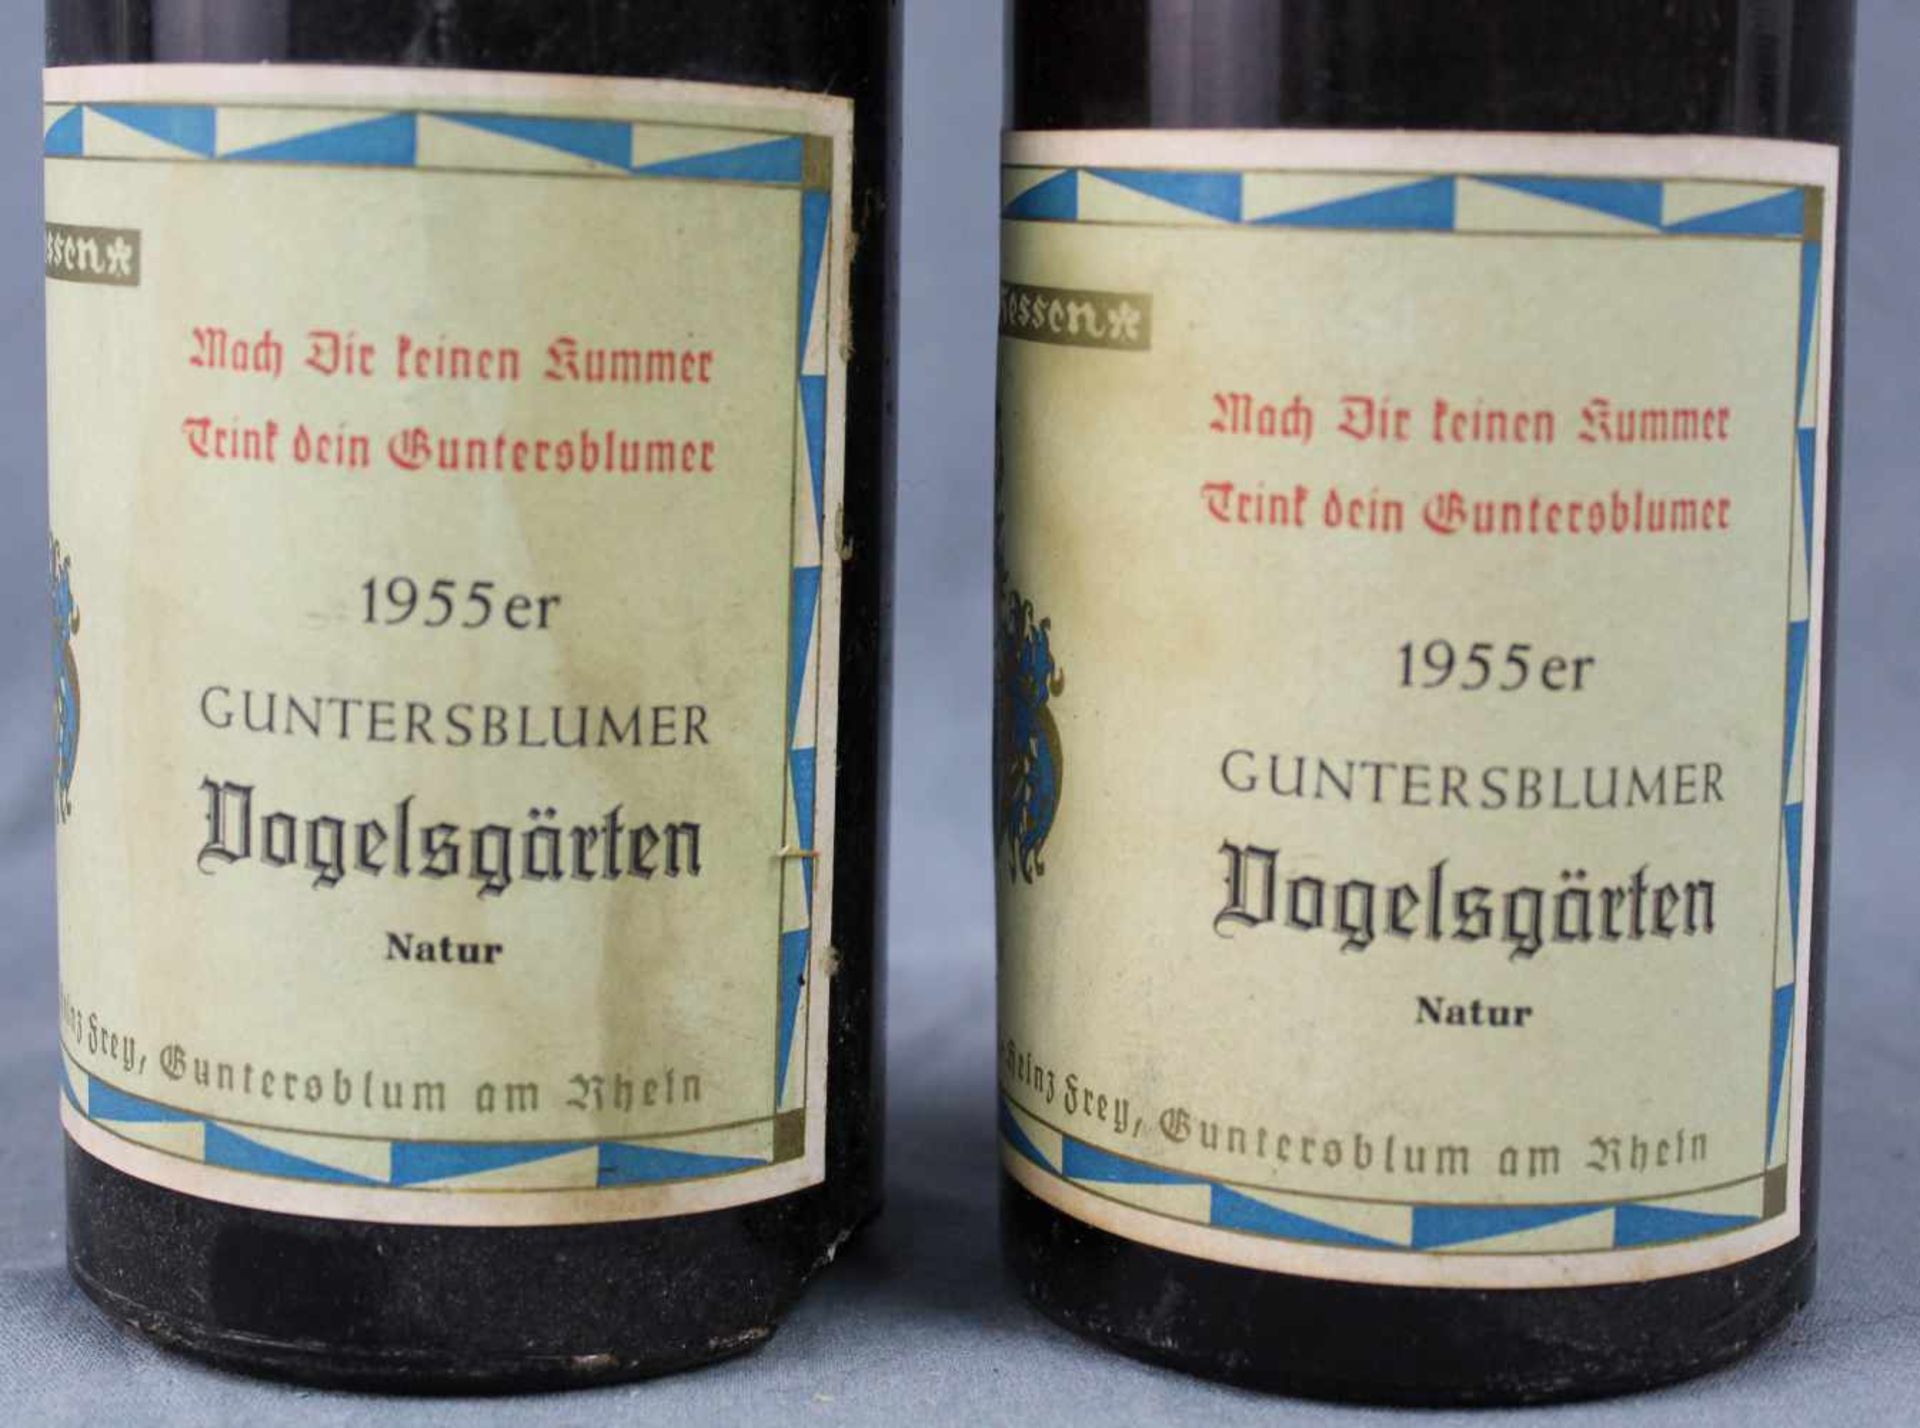 1955 Guntersblumer Vogelsgärten. Natur. 2 ganze Flaschen.Weingut Karl-Heinz Frey, Guntersblum am - Bild 2 aus 6